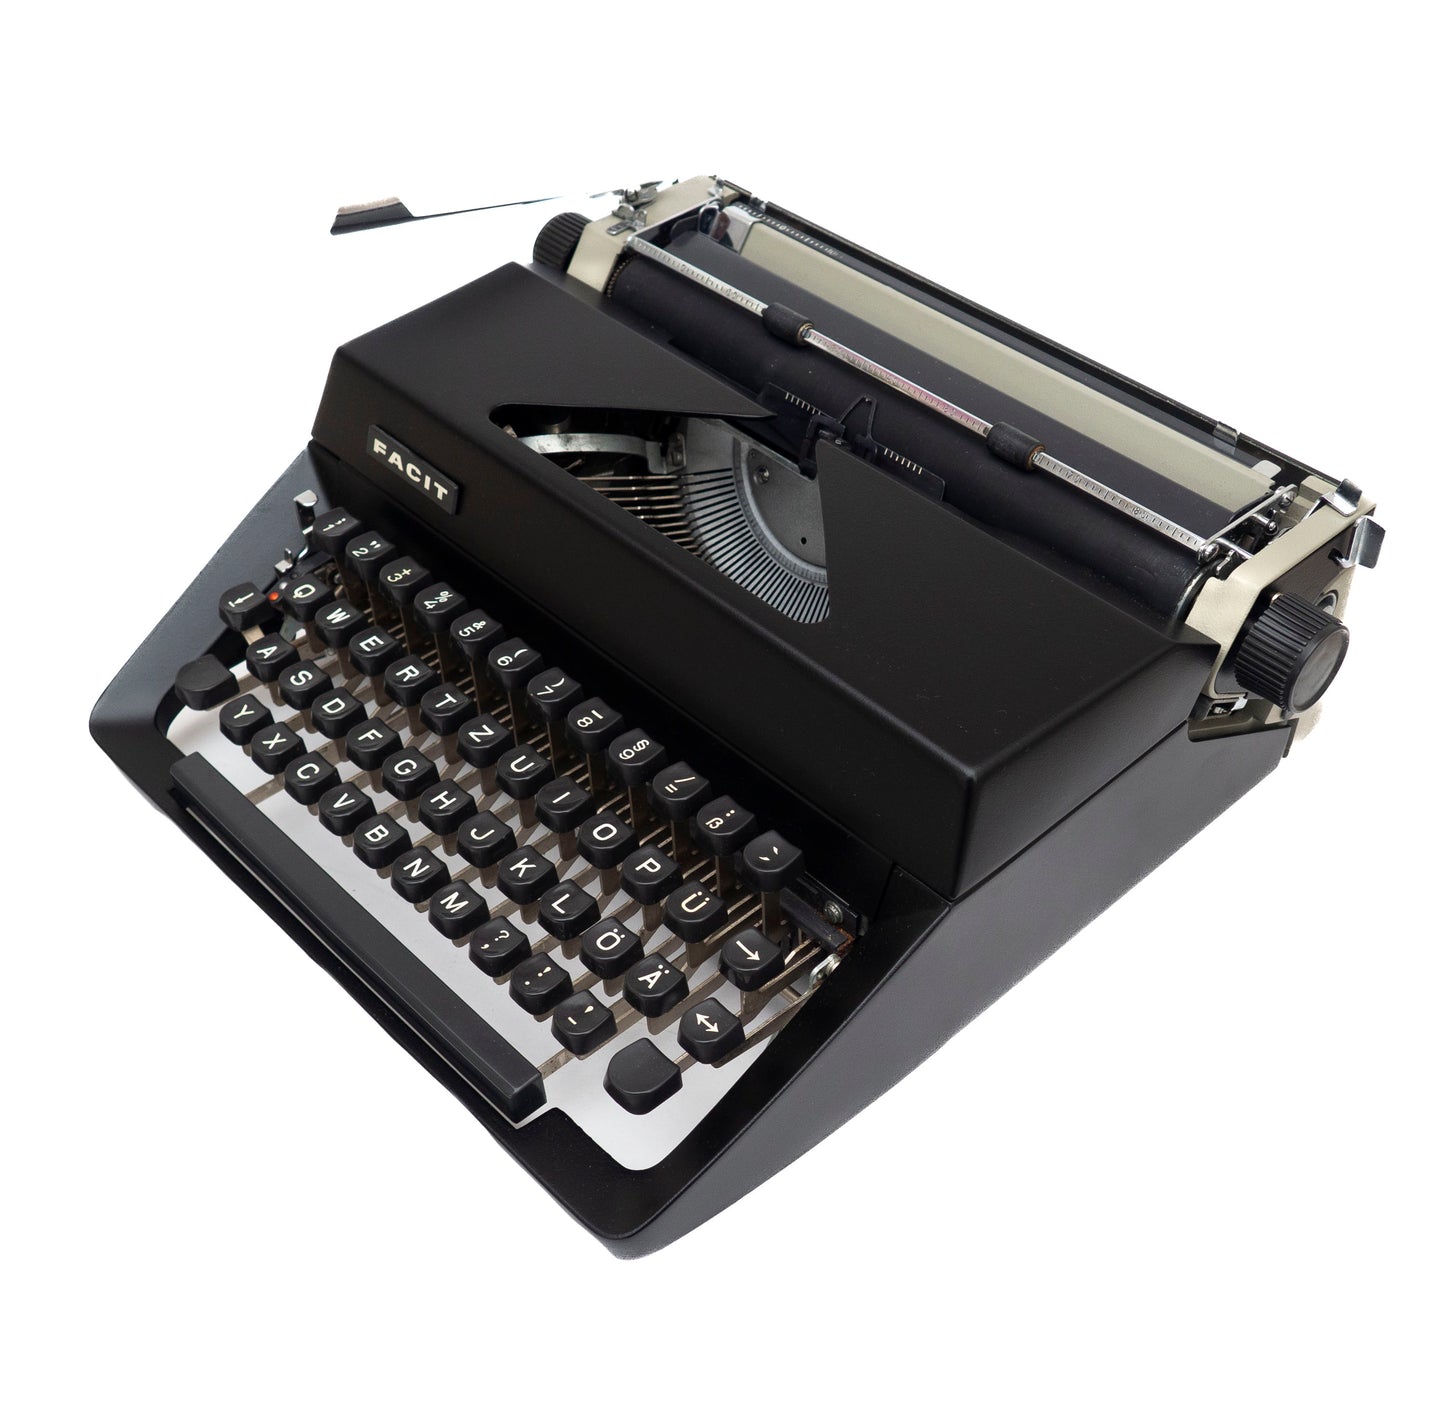 Schwarze Schreibmaschine Facit